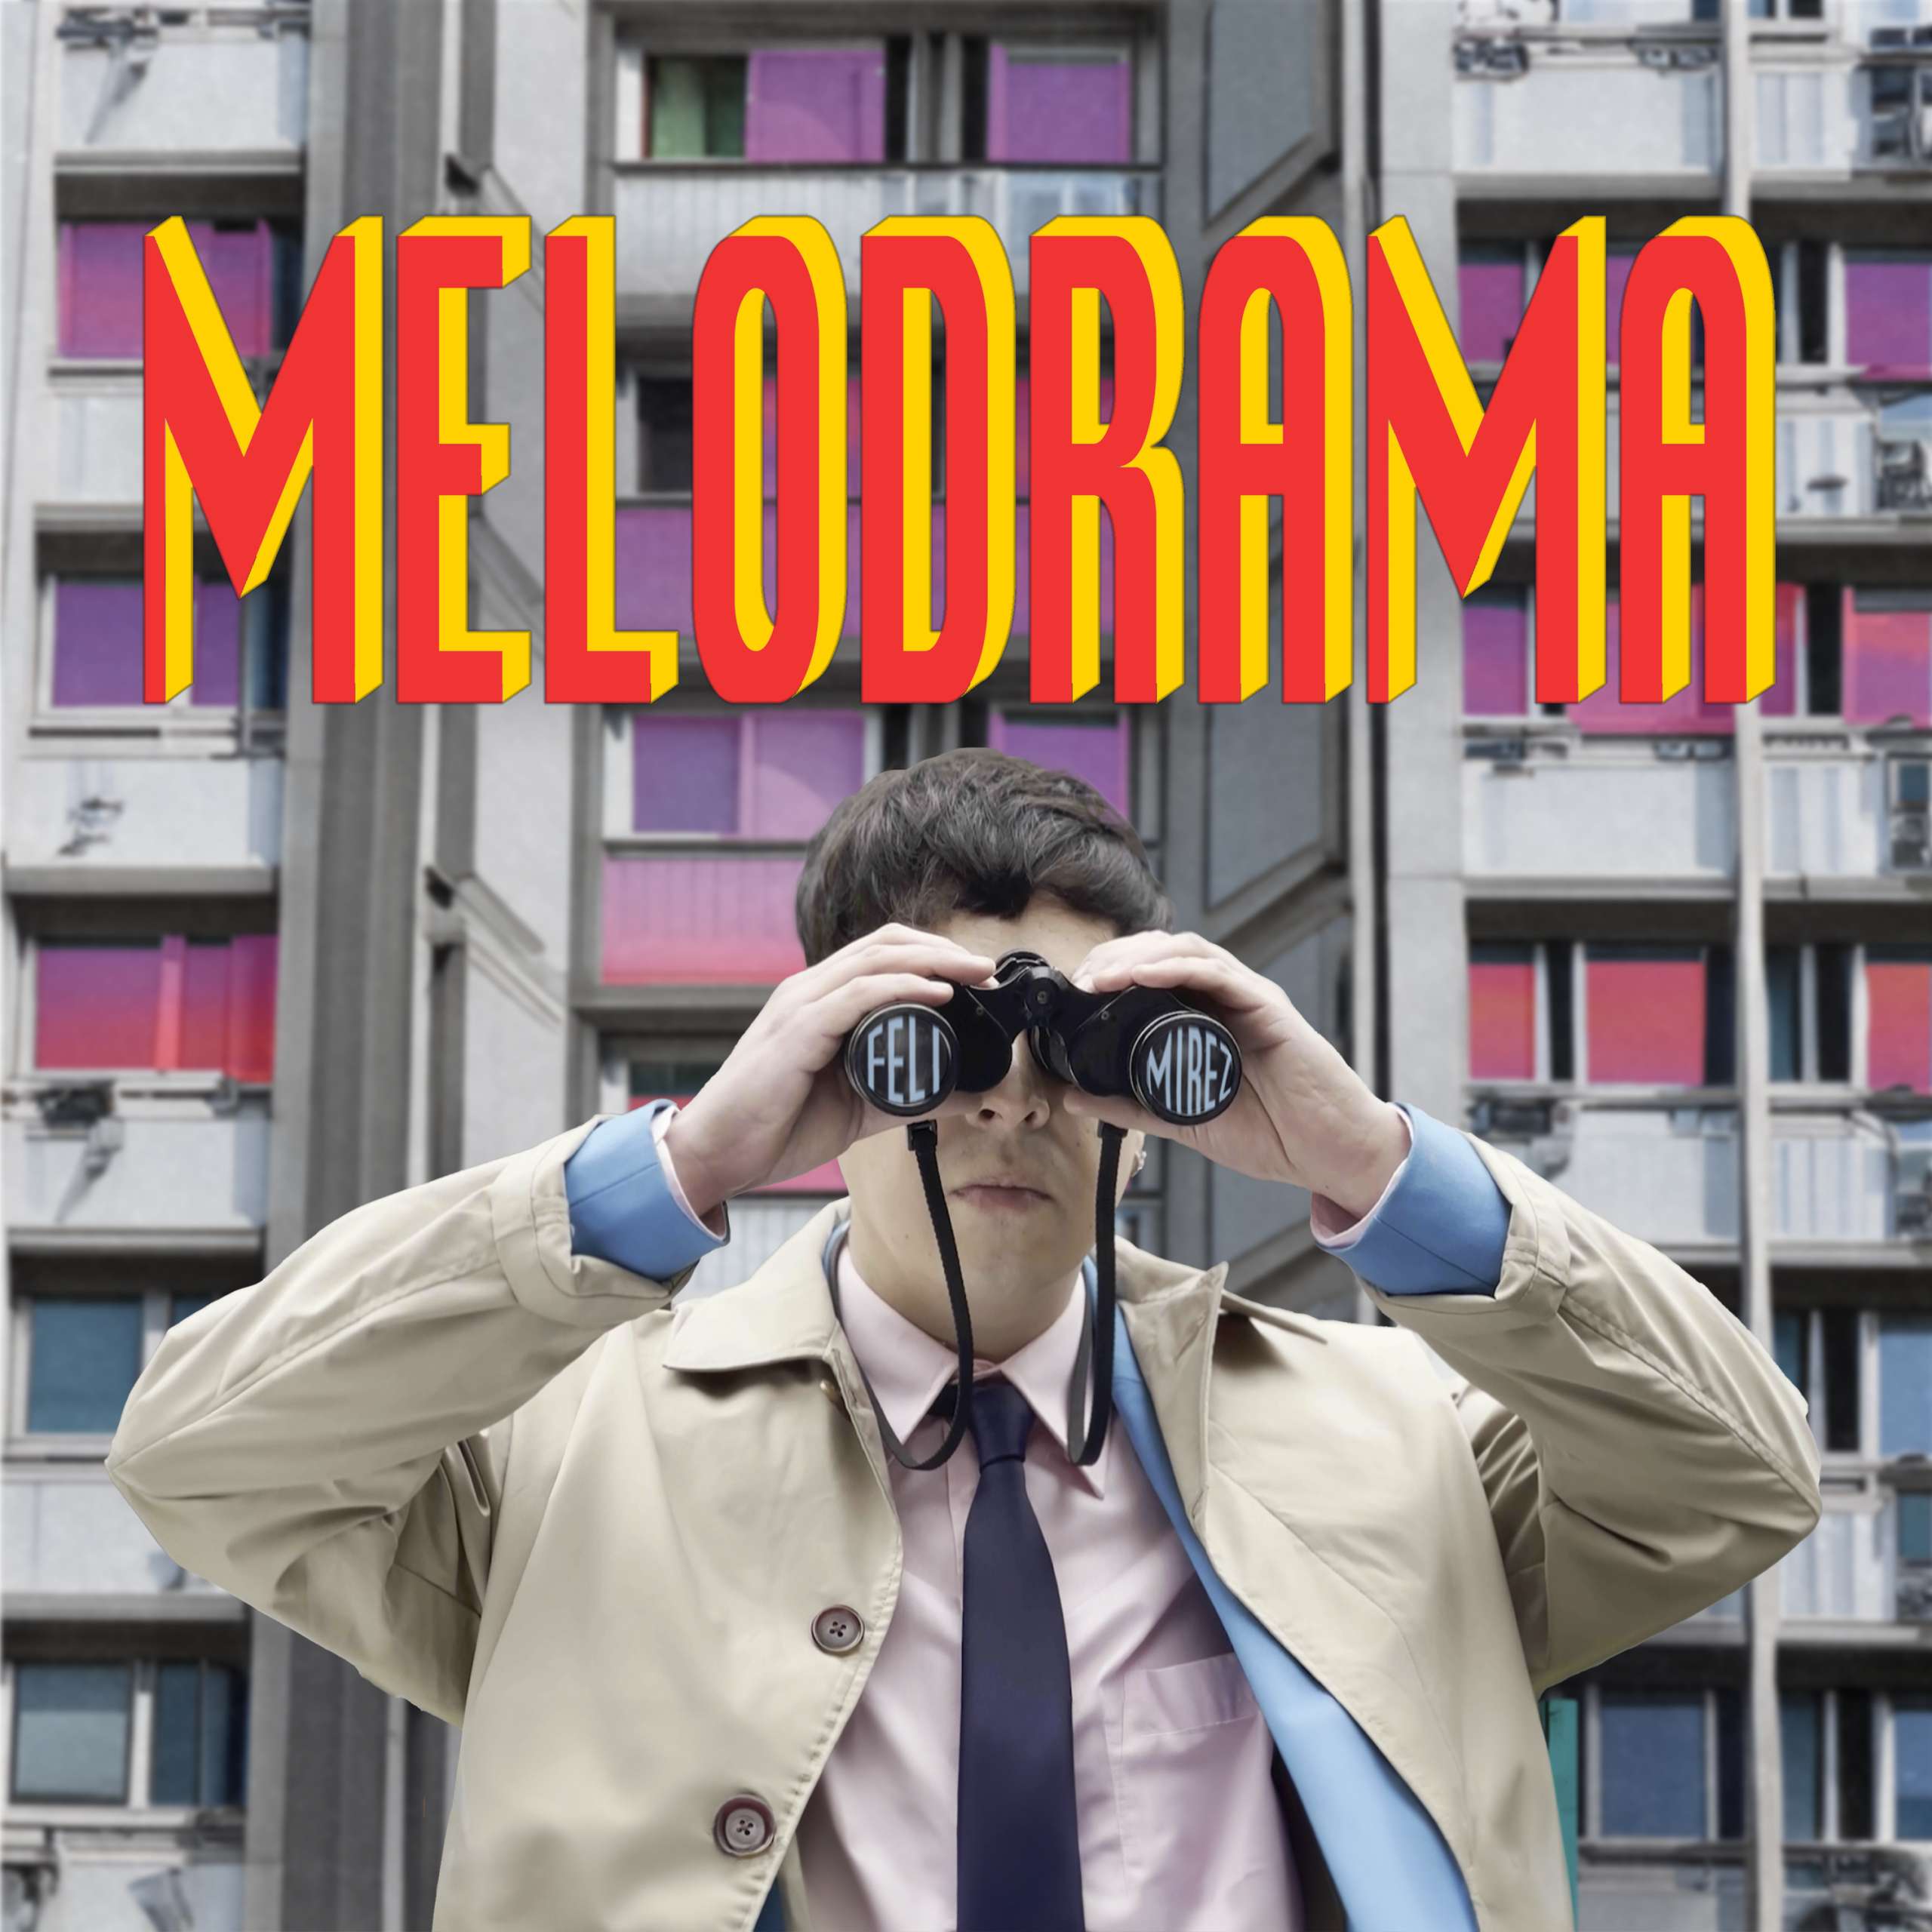 Melodrama, el nuevo video del cantante chileno Feli Mirez